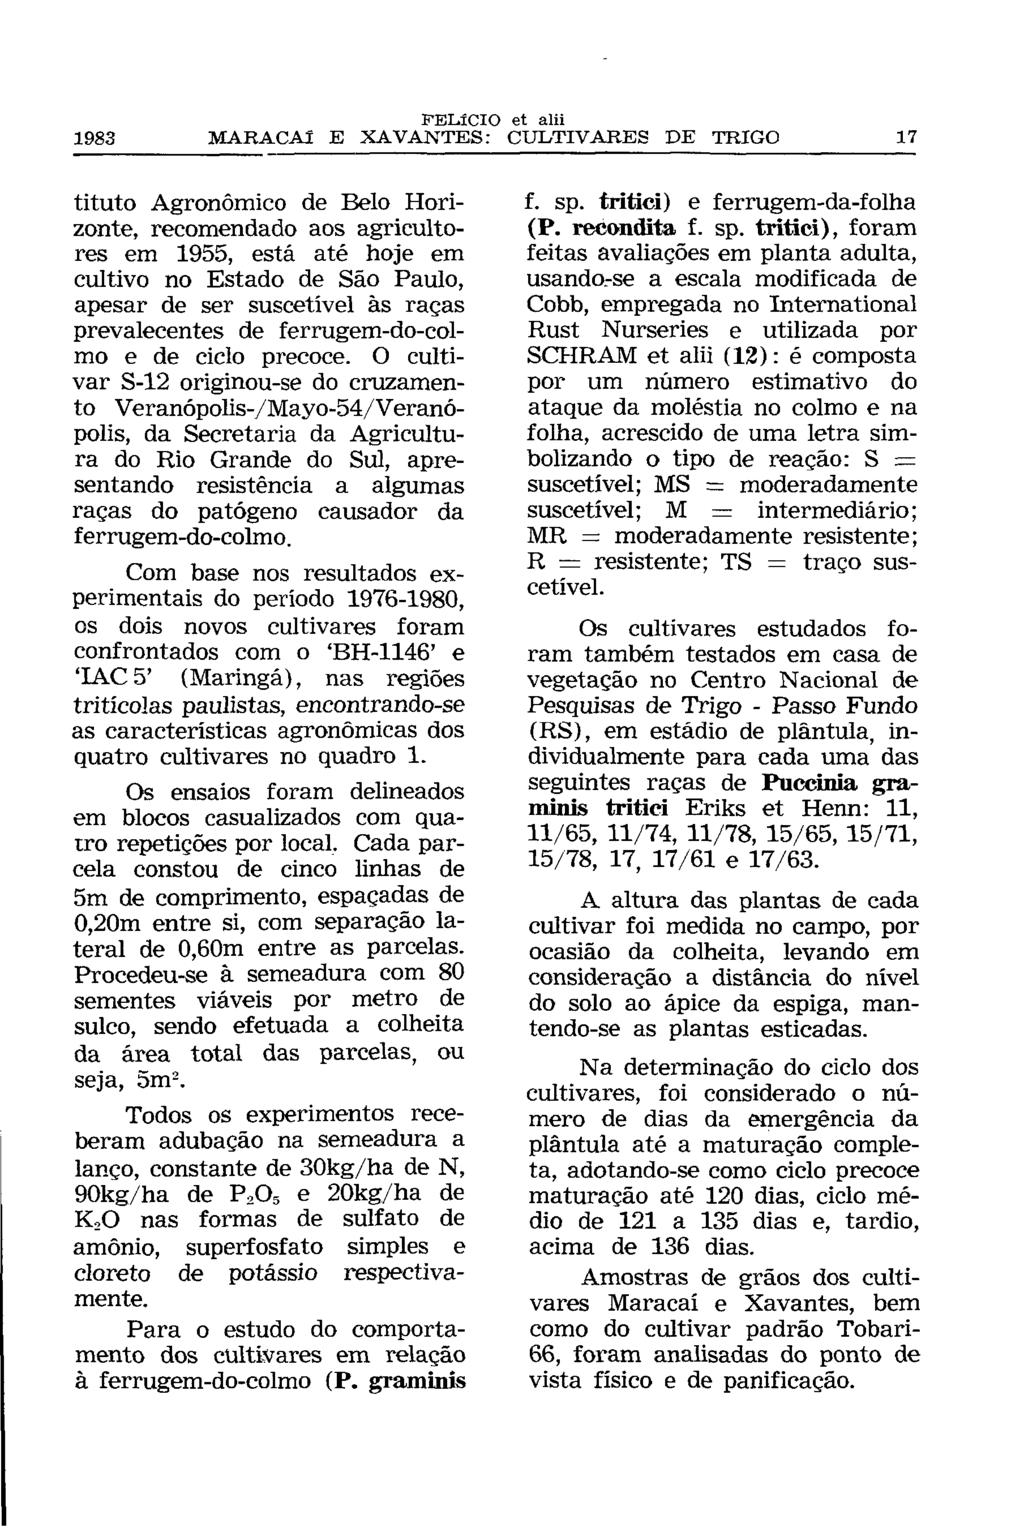 tituto Agronômico de Belo Horizonte, recomendado aos agricultores em 1955, está até hoje em cultivo no Estado de São Paulo, apesar de ser suscetível às raças prevalecentes de ferrugem-do-colmo e de